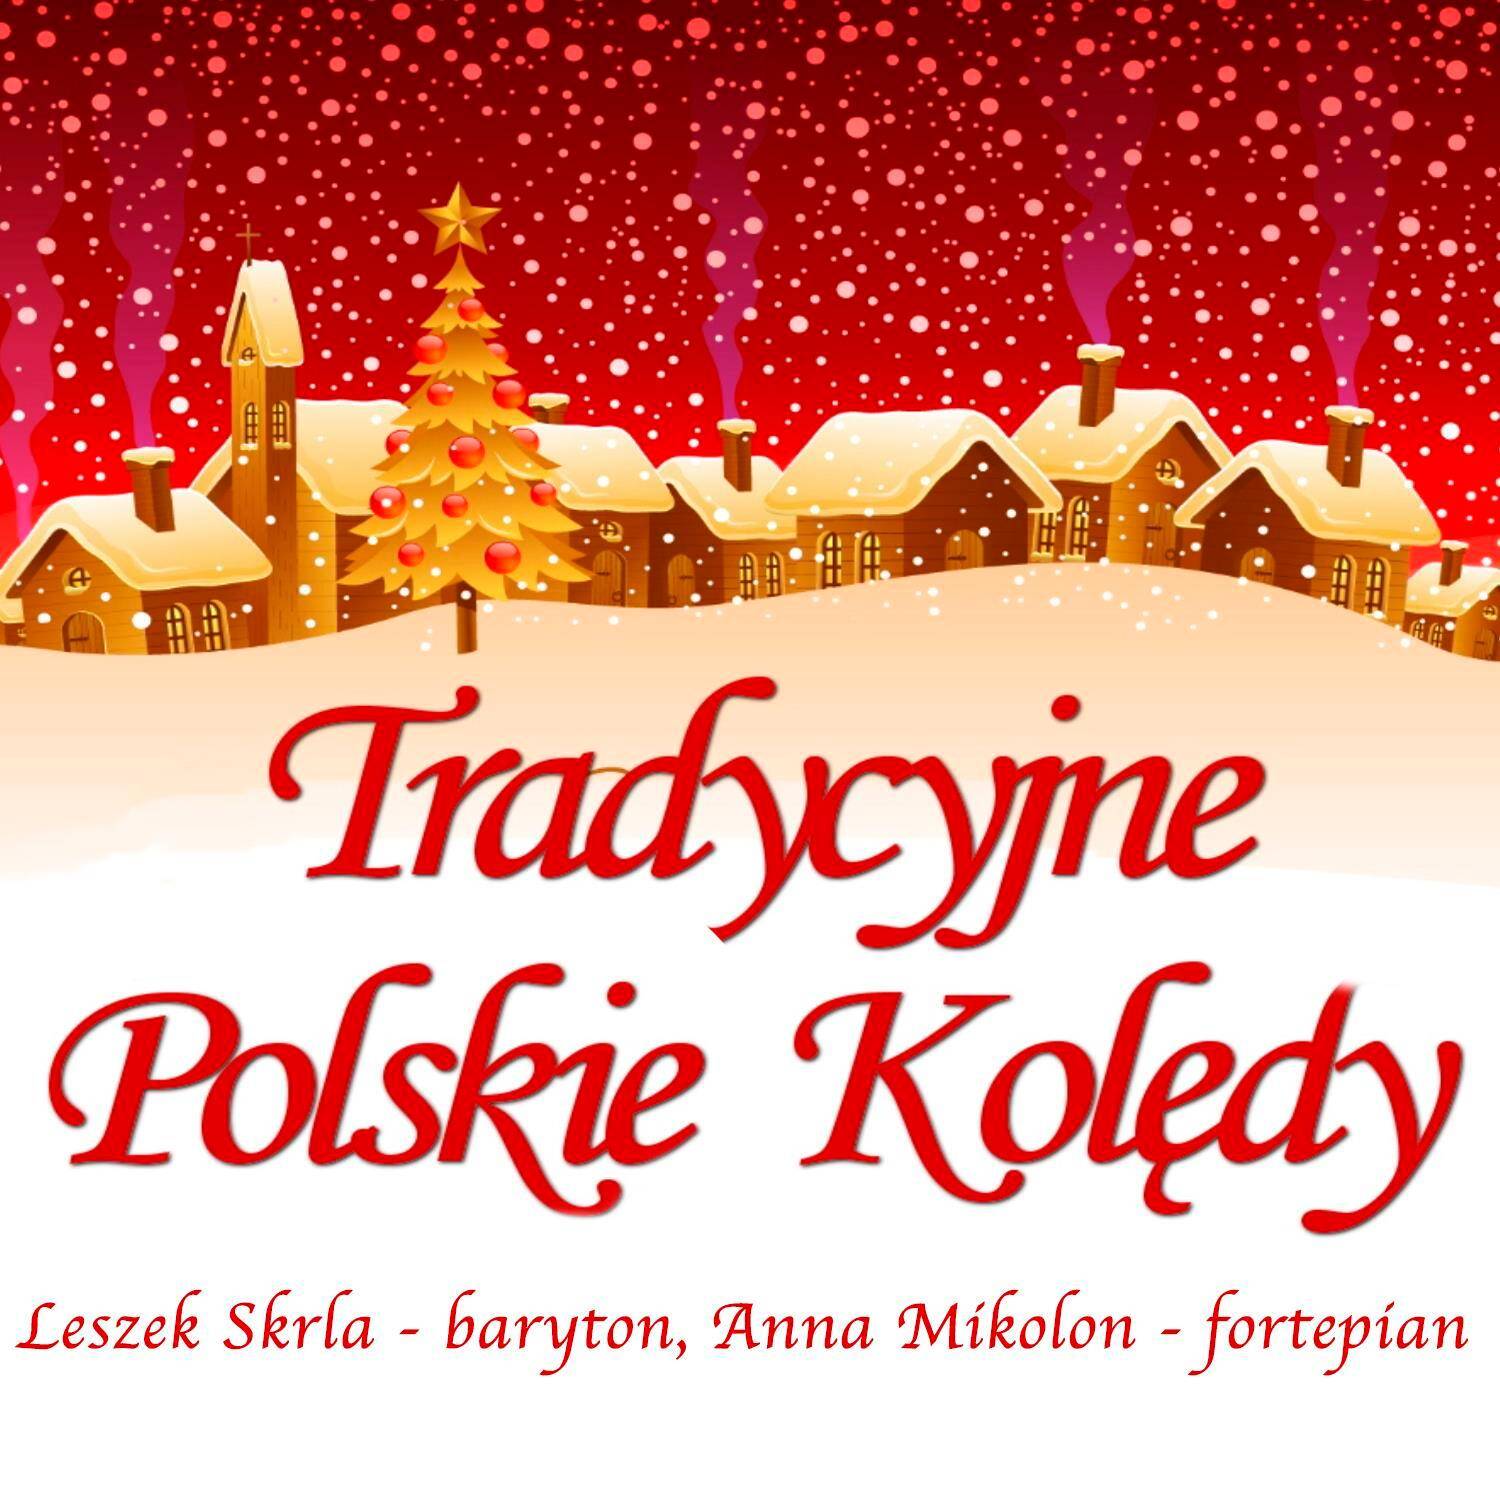 Tradycyjne polskie kolędy (CD)